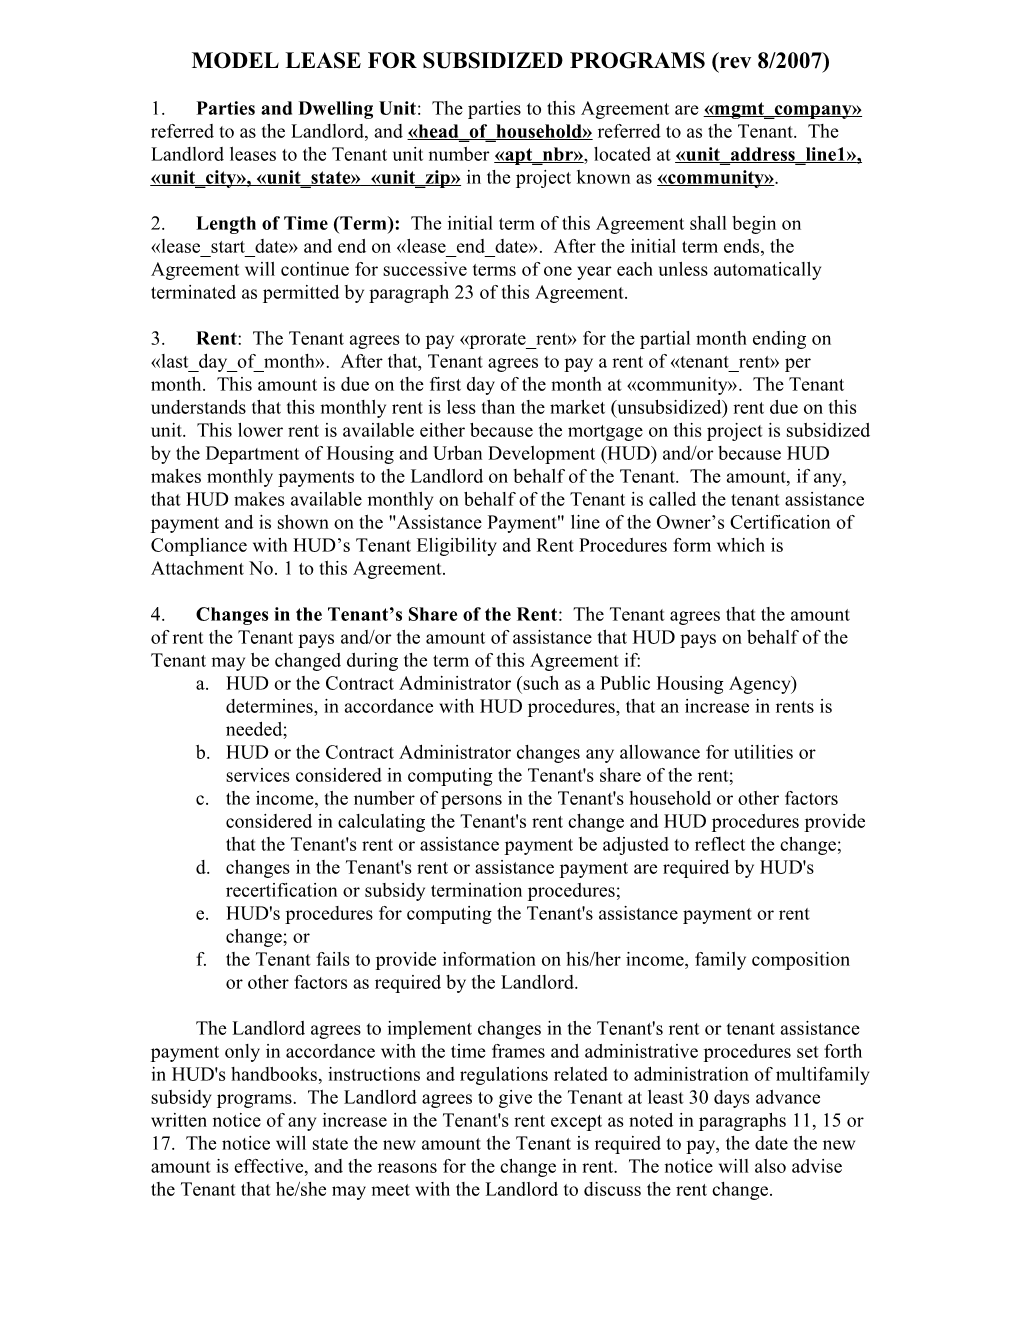 MODEL LEASE for SUBSIDIZED PROGRAMS (Rev 8/2007)